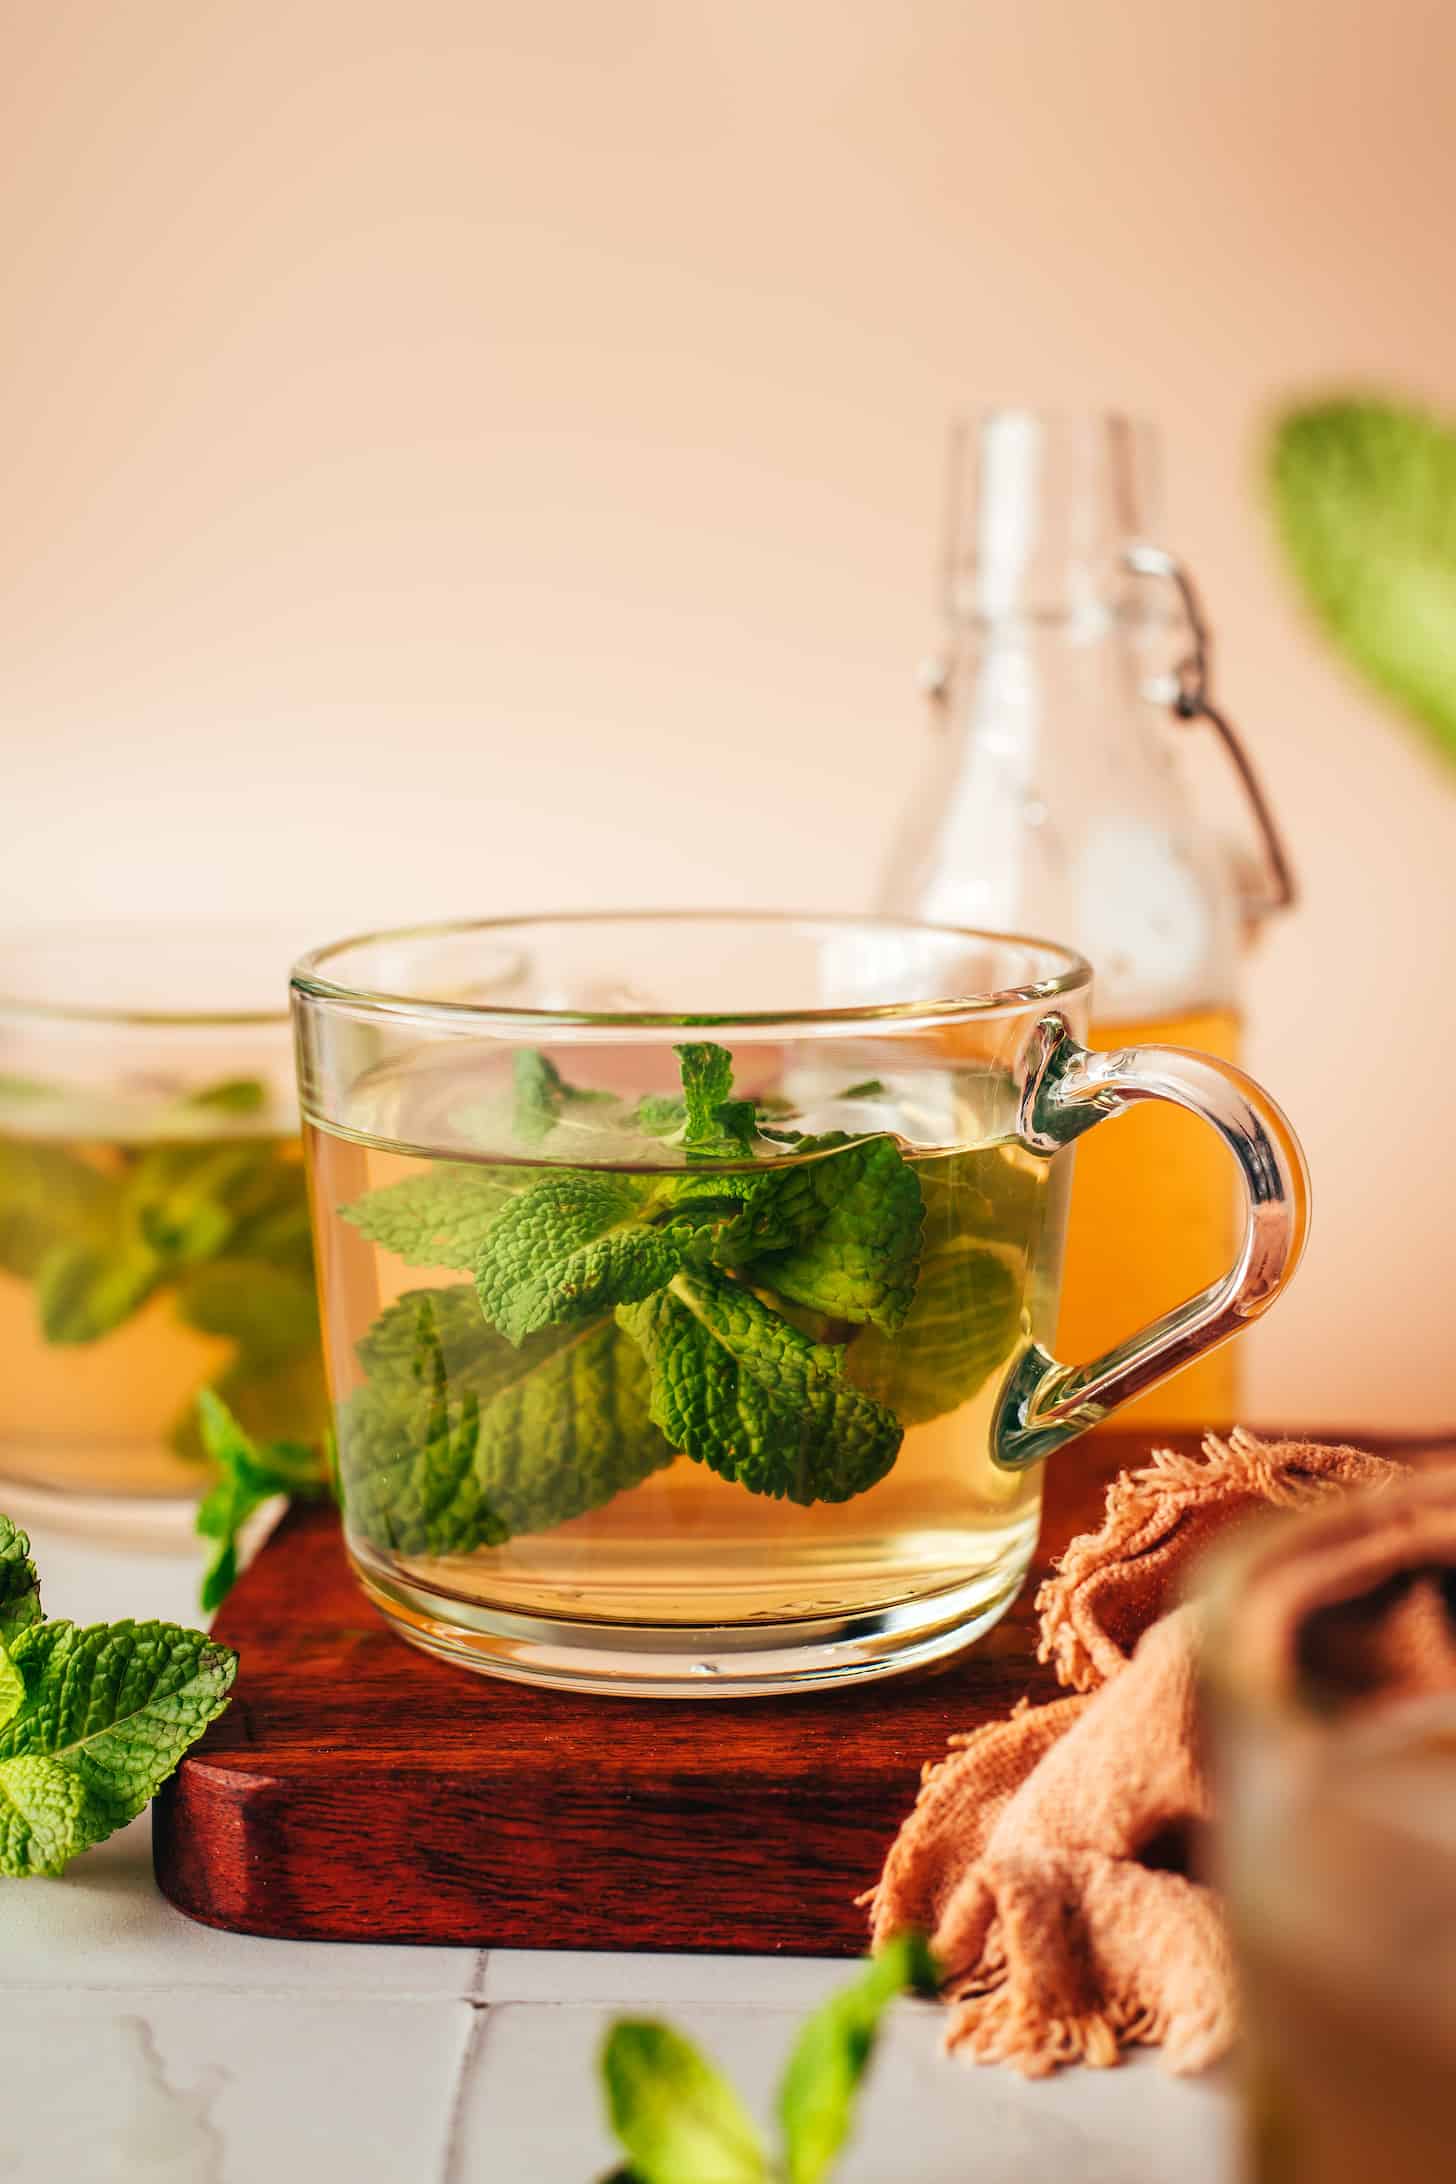 How to Make Fresh Mint Tea